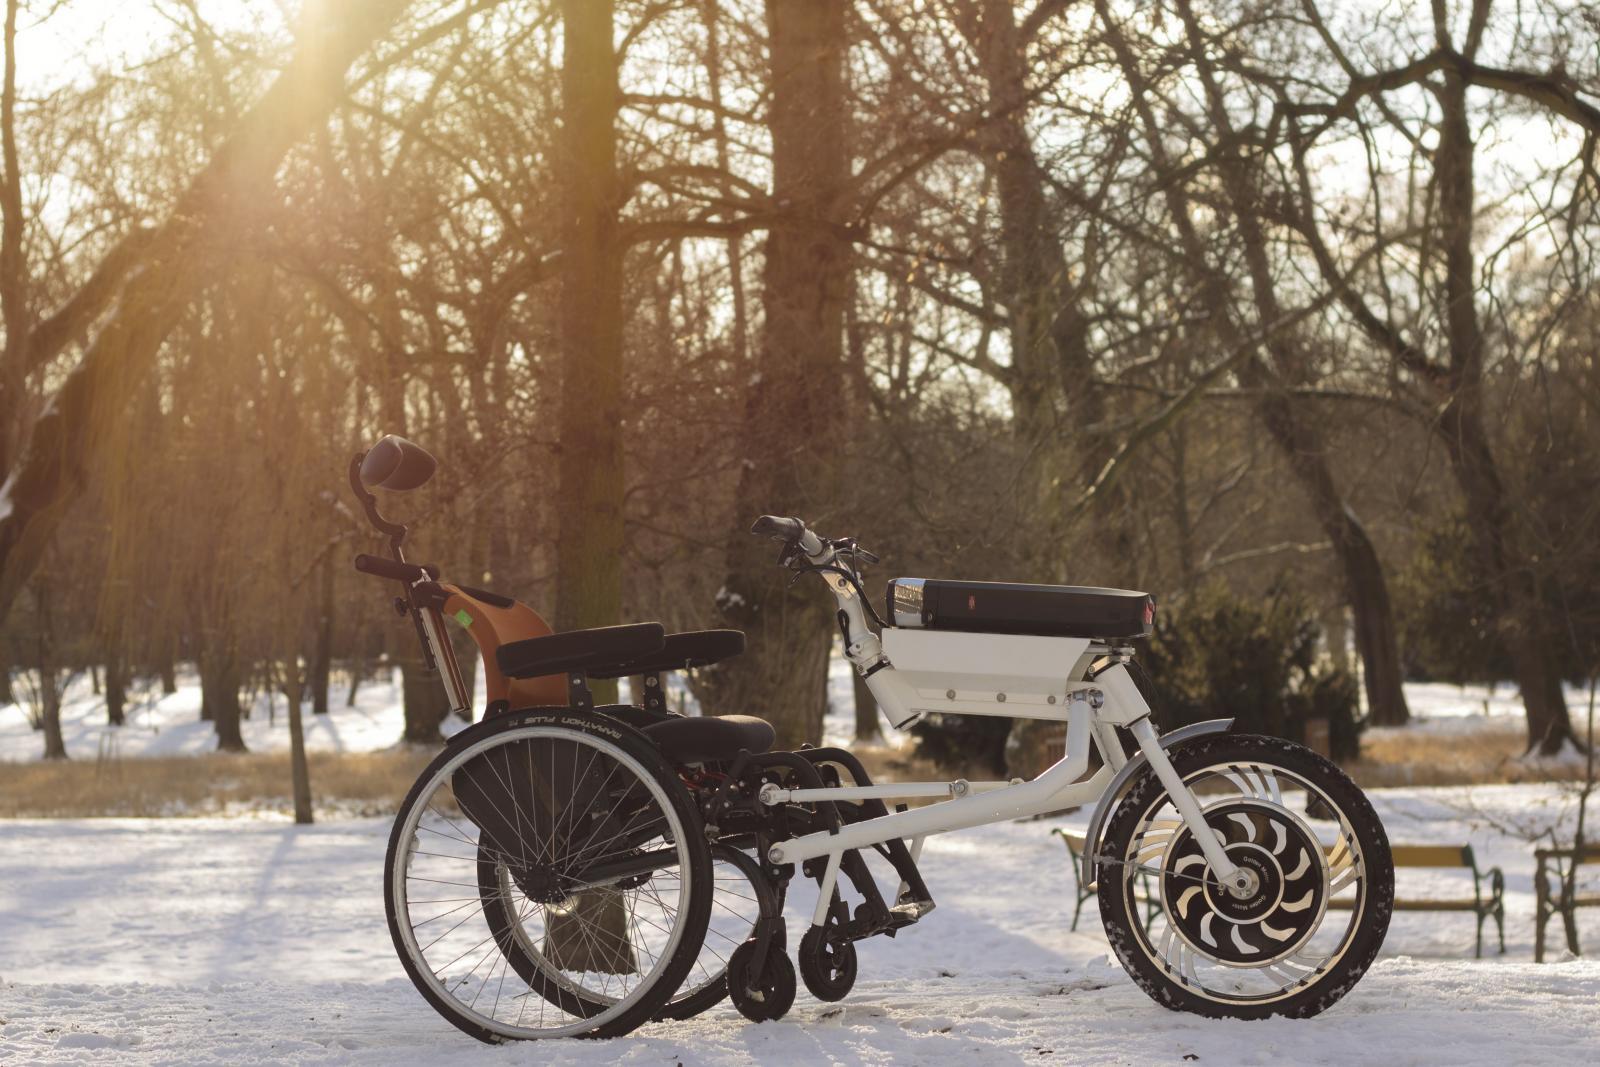 Čeští vývojáři proměnili obyčejný invalidní vozík na parádní trojkolku